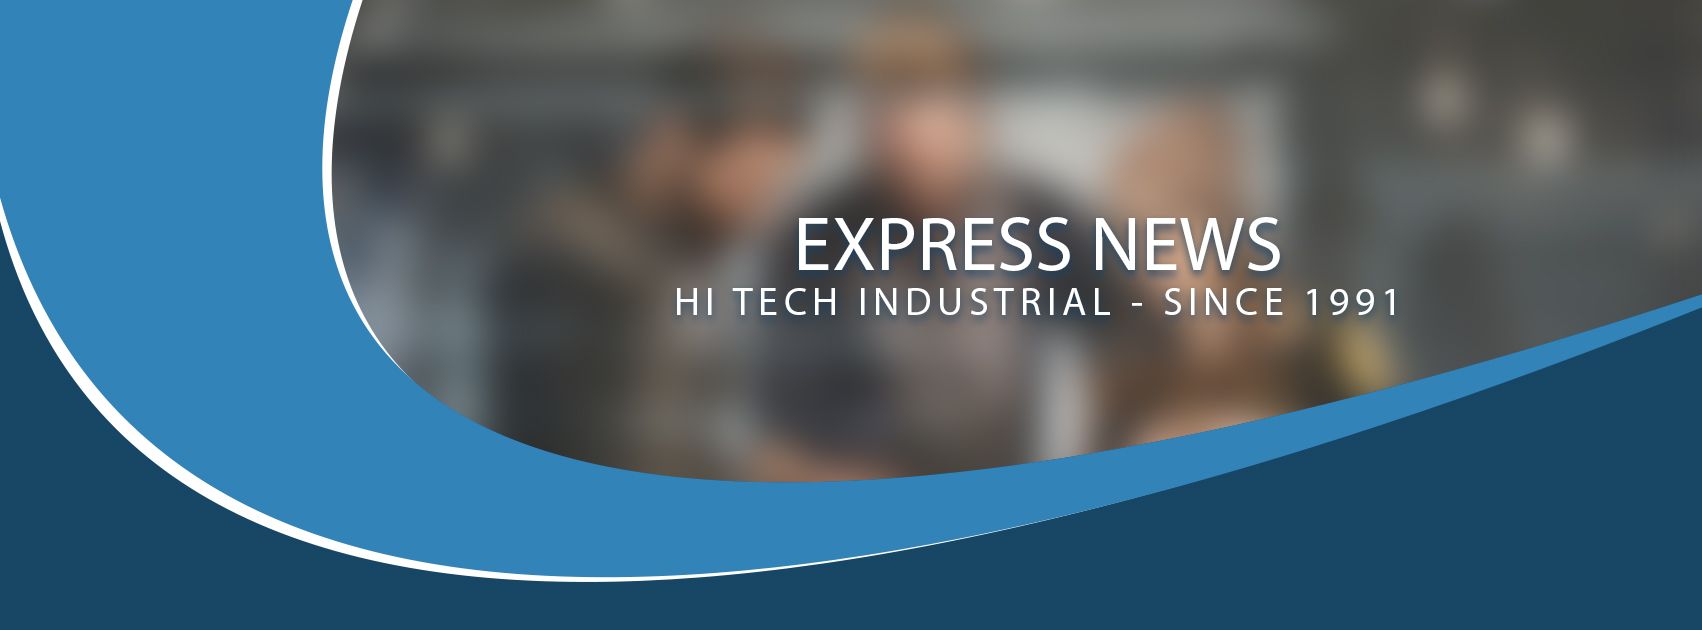 express news hitech industrial